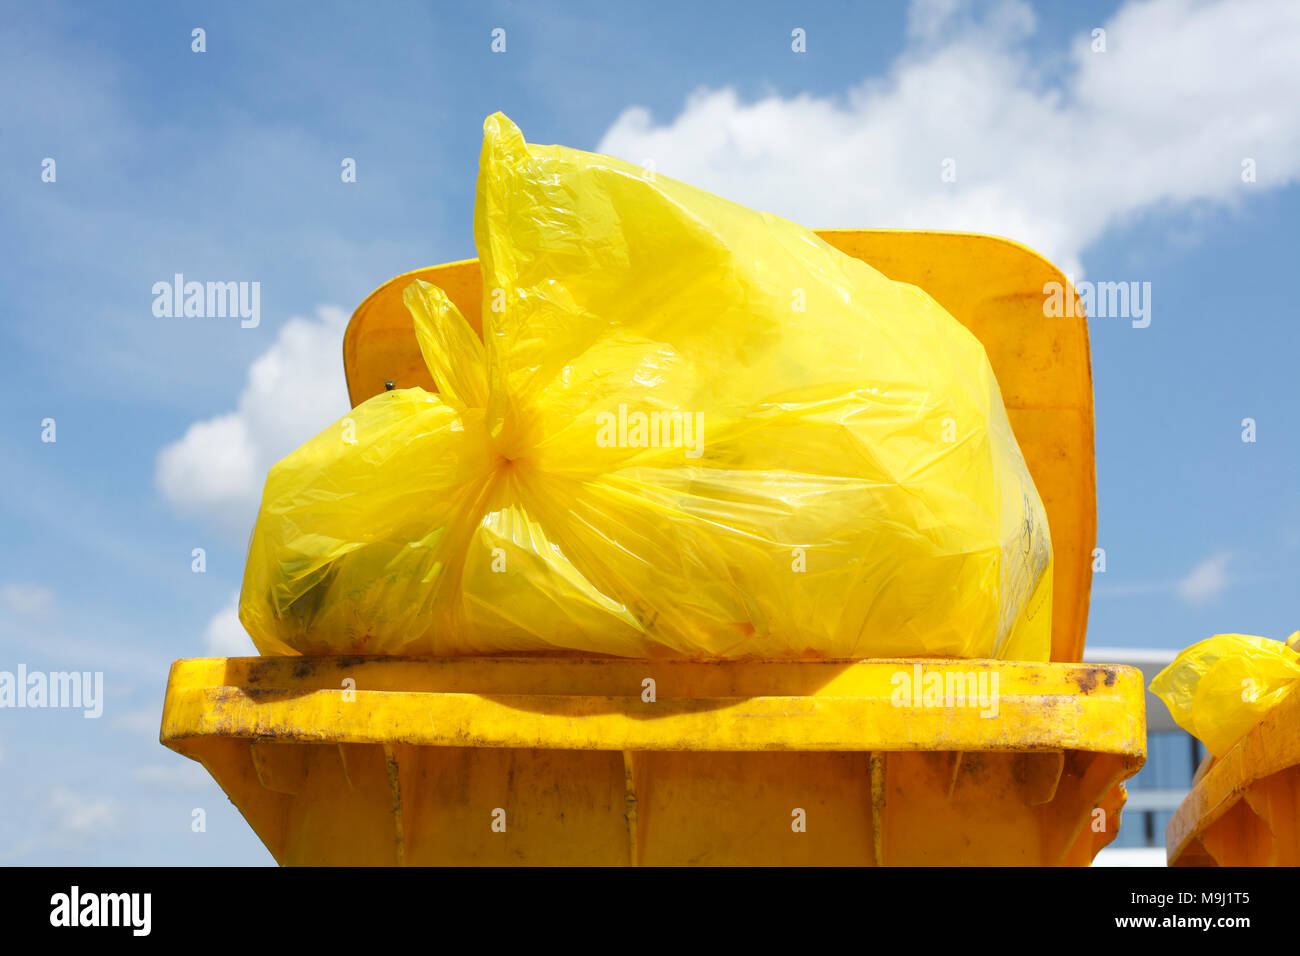 yellow ton for plastic garbage, Yellow sack, Germany, Europe  I  Bunte Mülltonnen , Gelbe Tonnen für Plastikmüll, Rote Tonne für Glasmüll, Deutschland Stock Photo